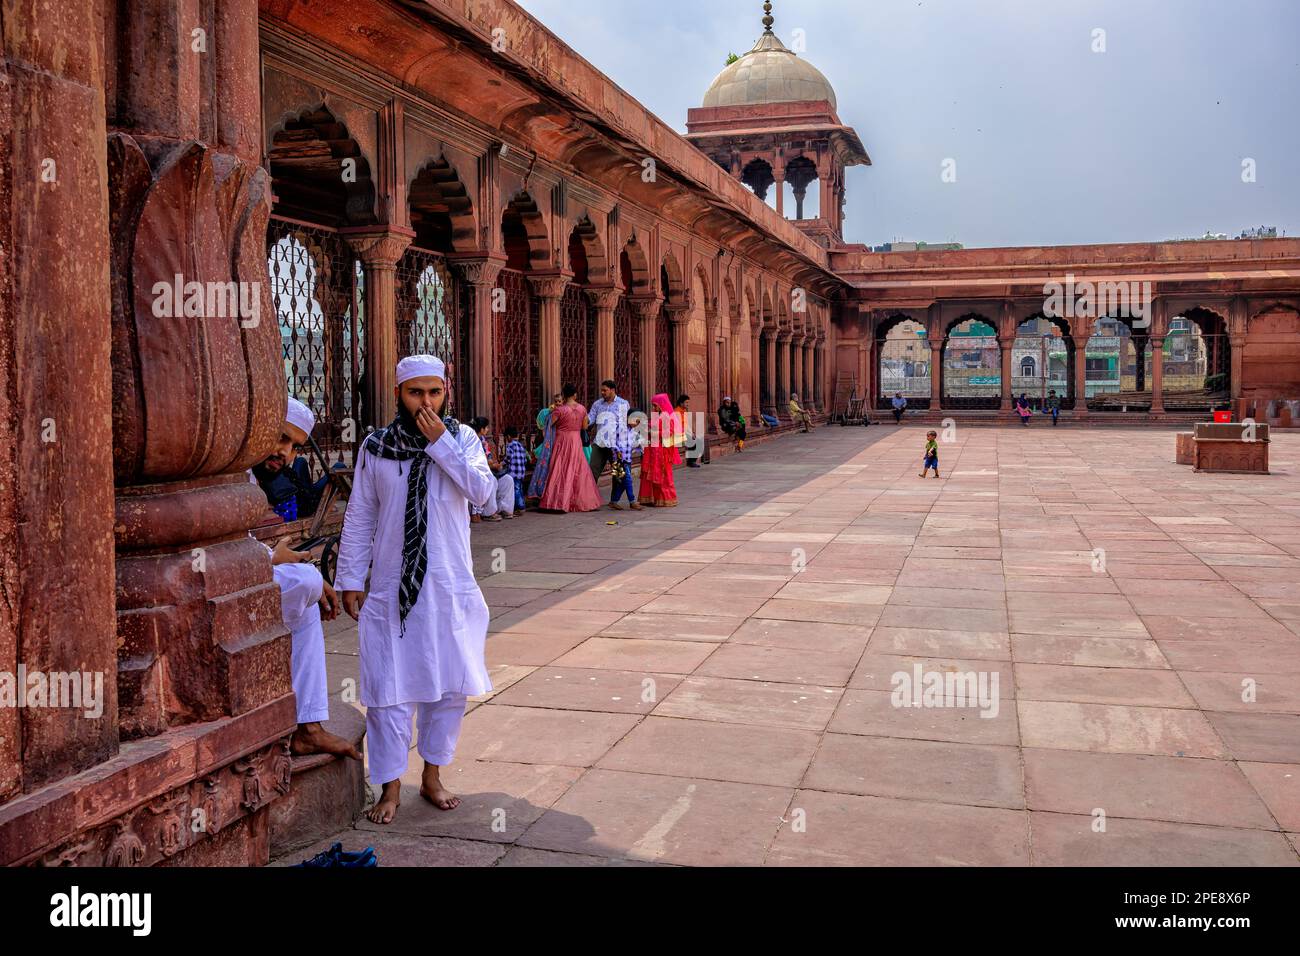 La cour ouverte de la mosquée Jama Masjid de Delhi peut accueillir 25 000 personnes Banque D'Images